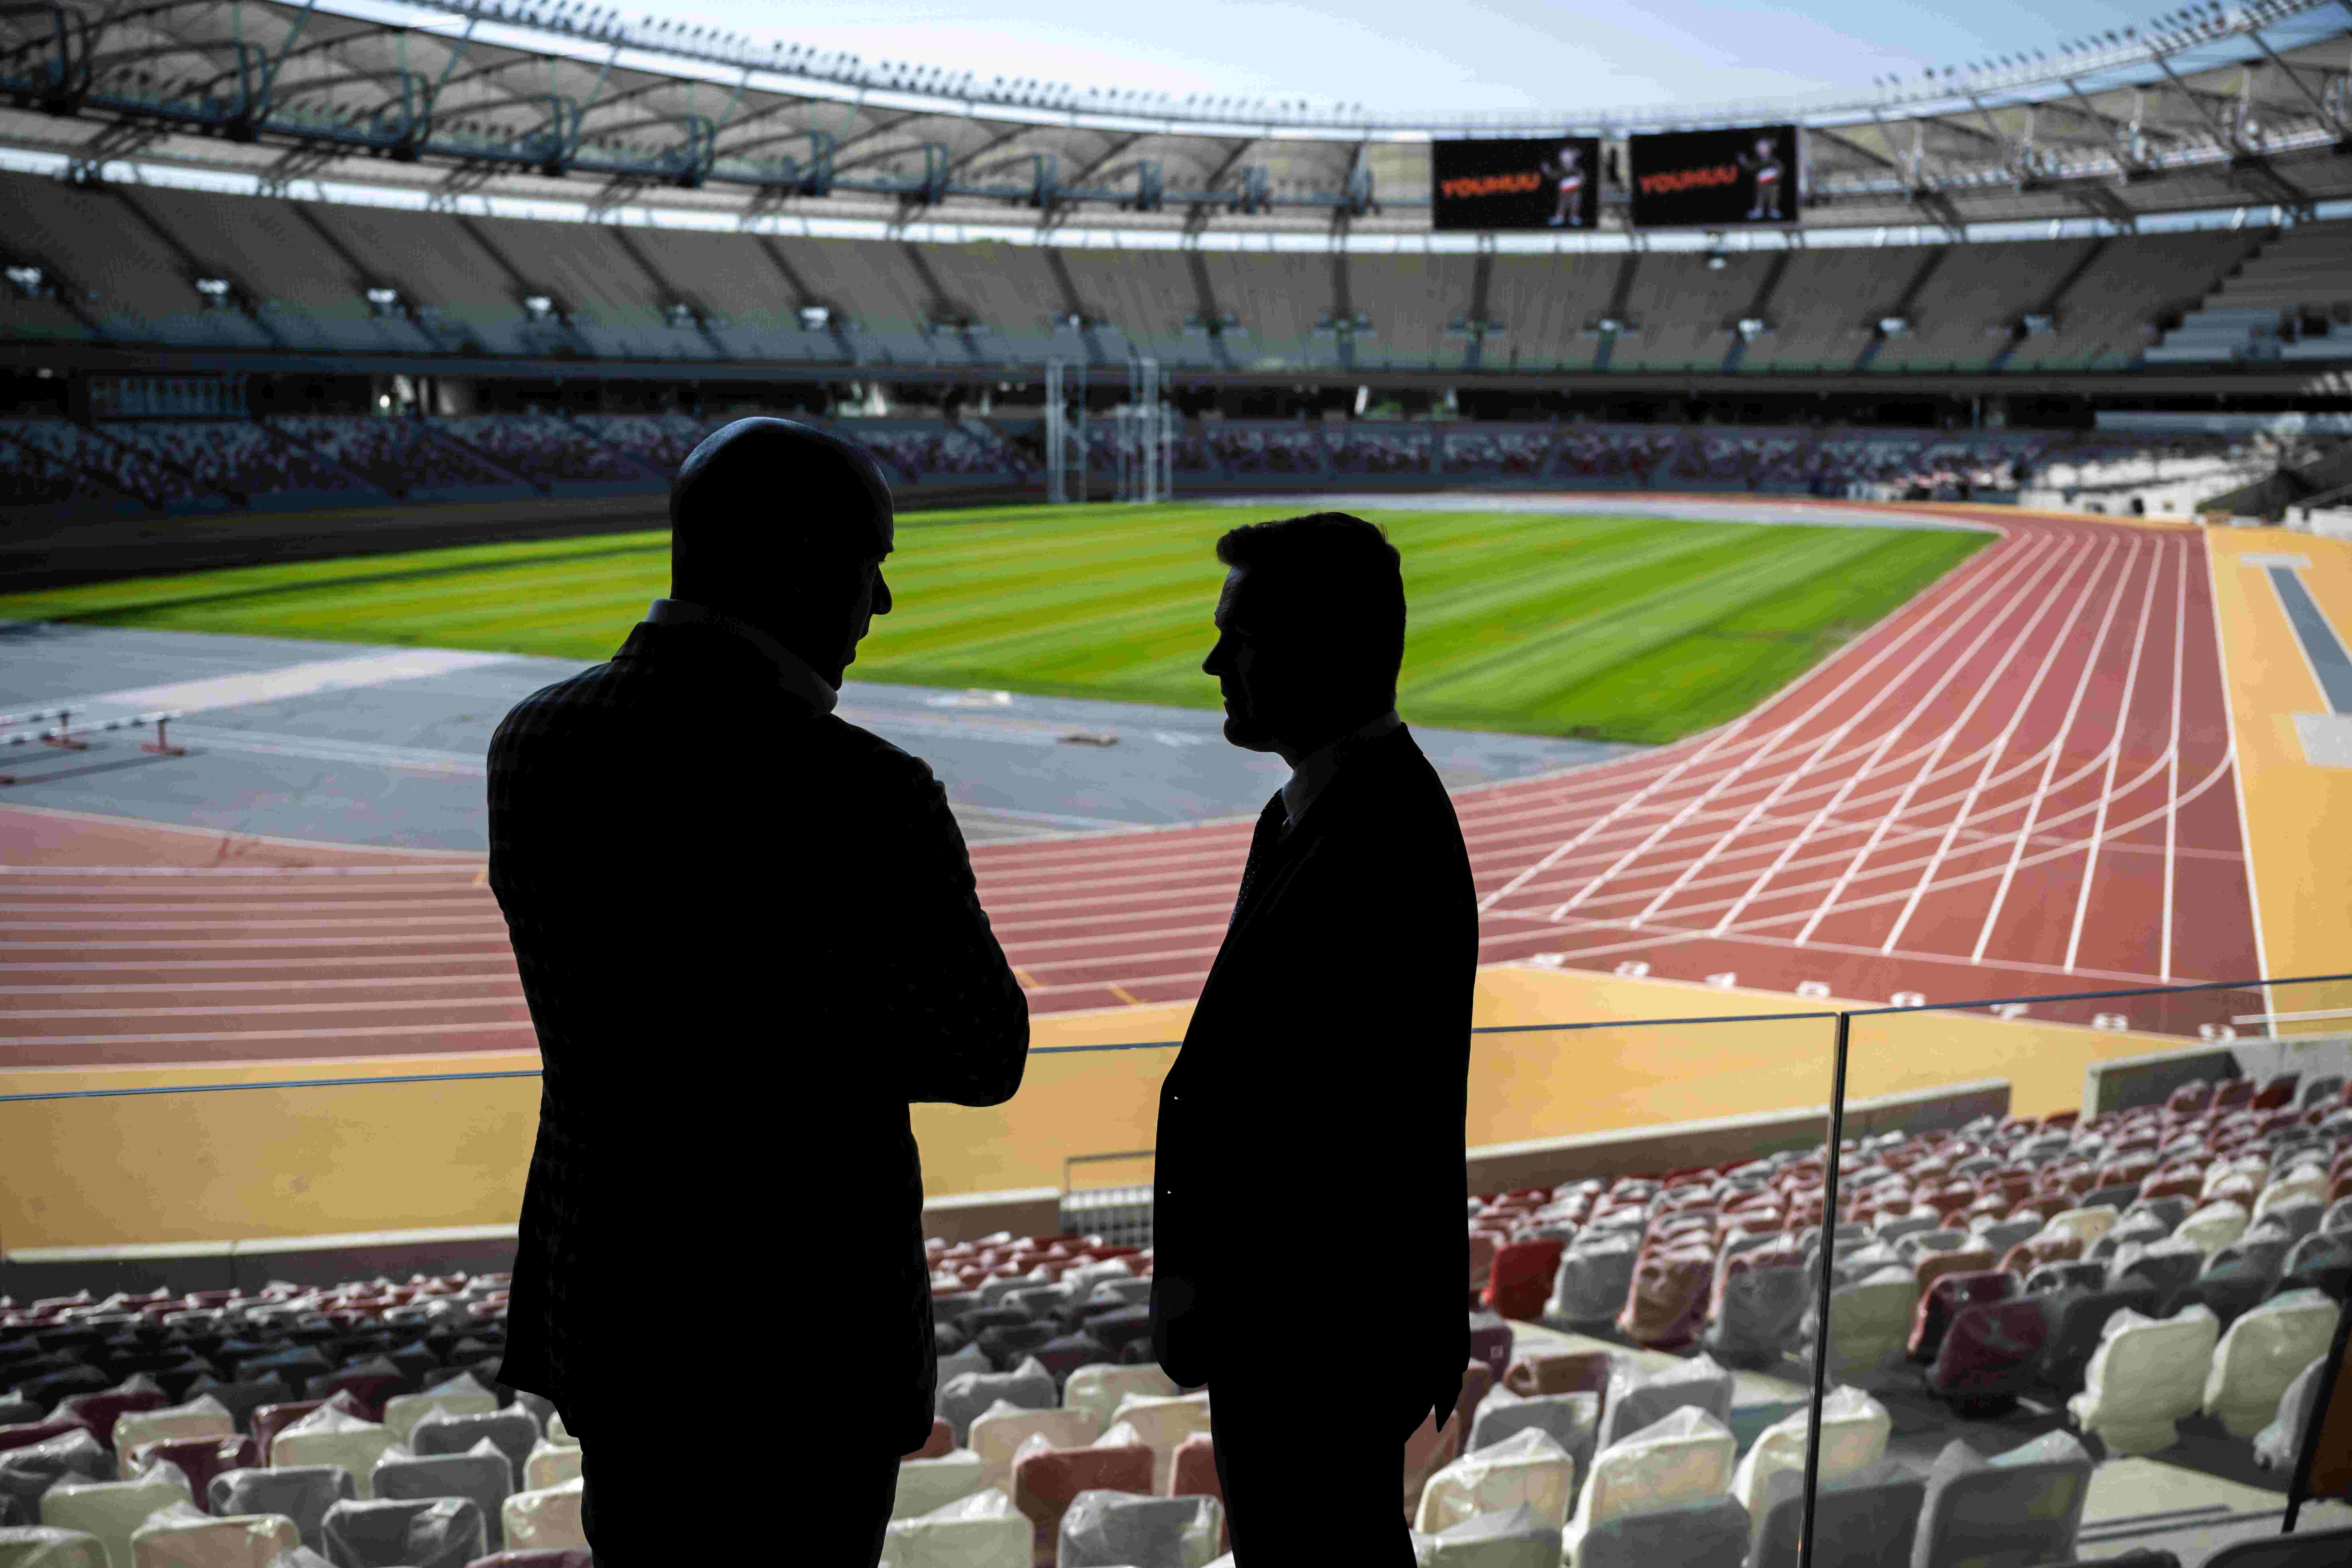 Megígérte, de alig fizeti a kormány az 50 milliárdot, amit az atlétikai stadionért ígért Budapestnek